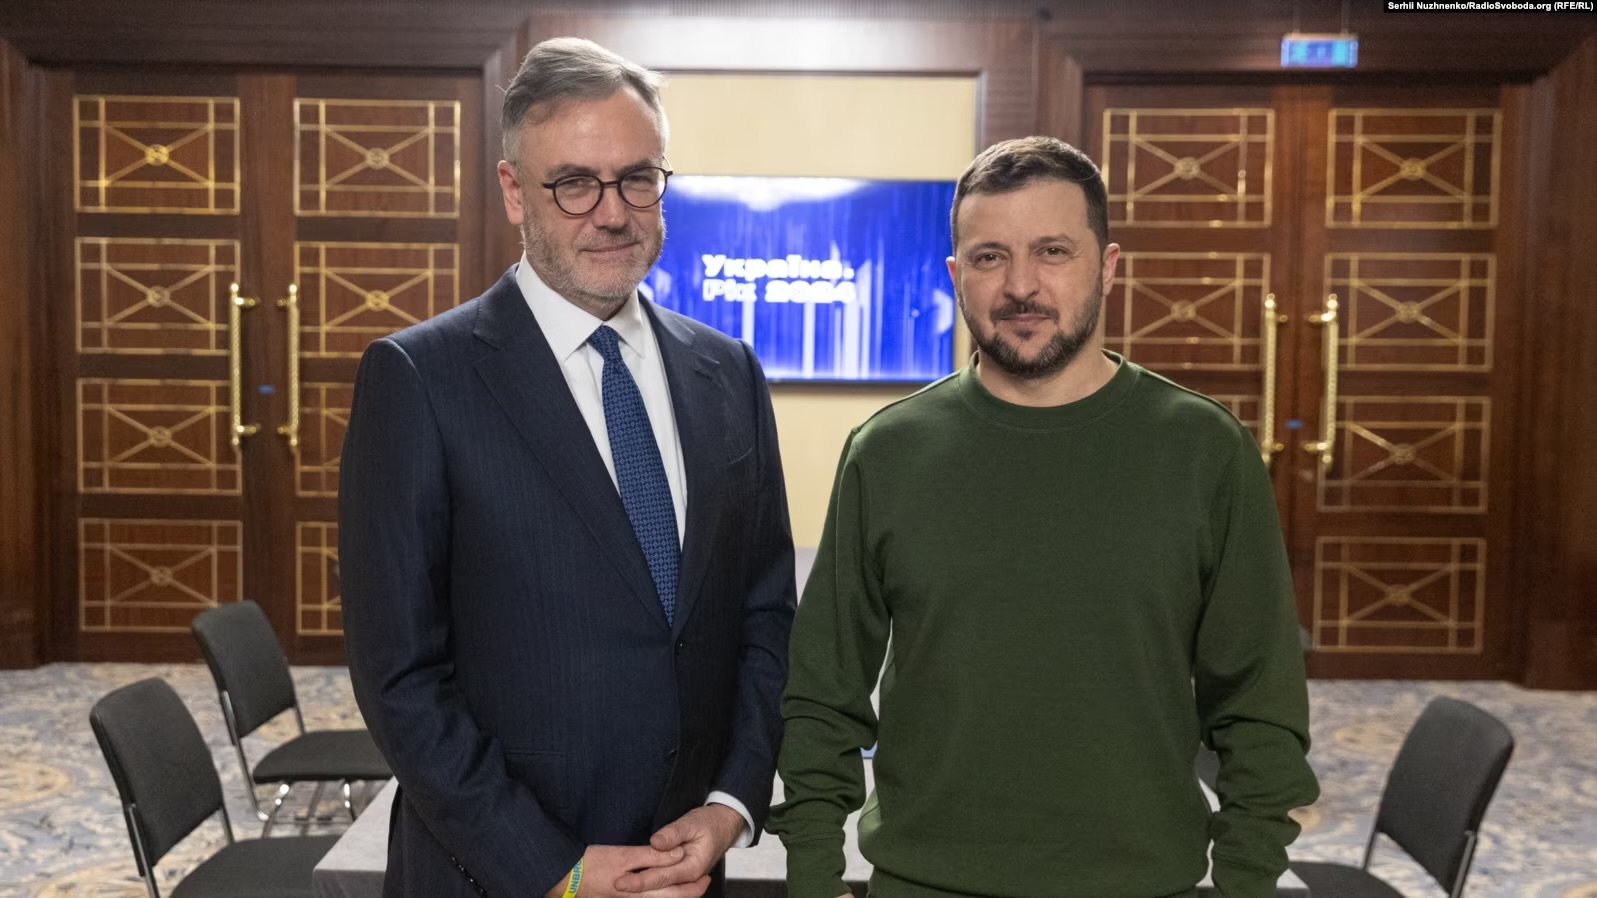 RFE/RL President Capus meets Ukrainian President Zelenskiy, discusses imprisoned journalist in Crimea